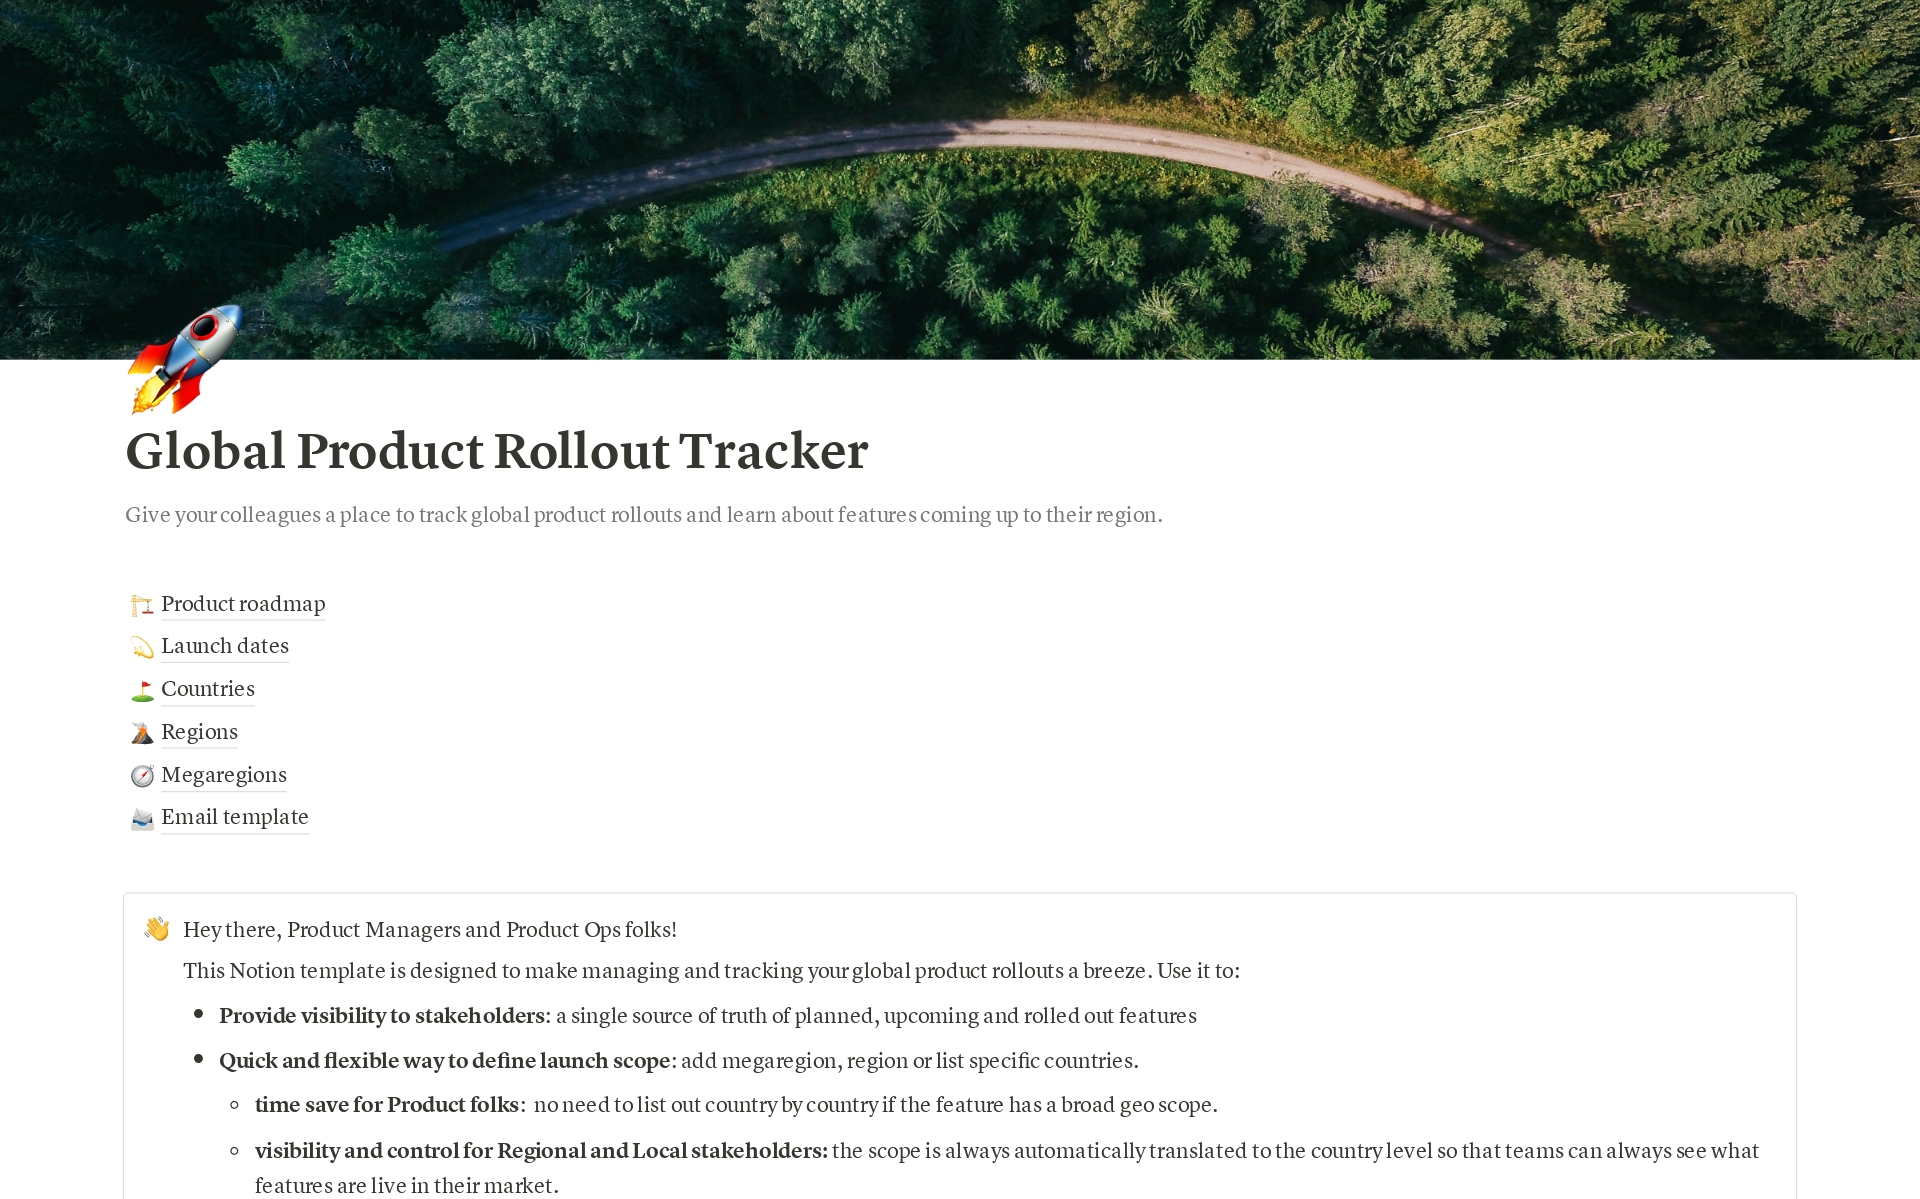 Vista previa de una plantilla para Global Product Rollout Tracker